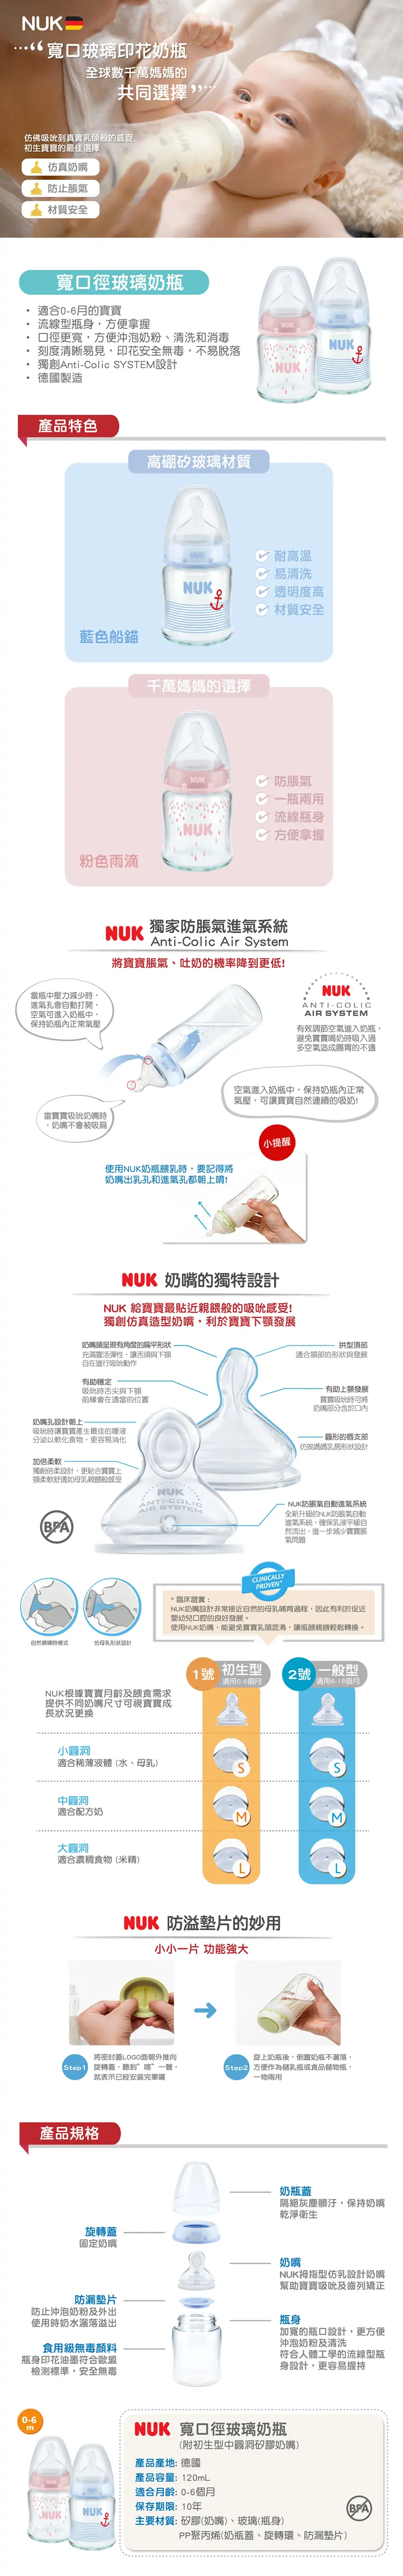 Nuk Premium Choice 玻璃宽口径奶瓶